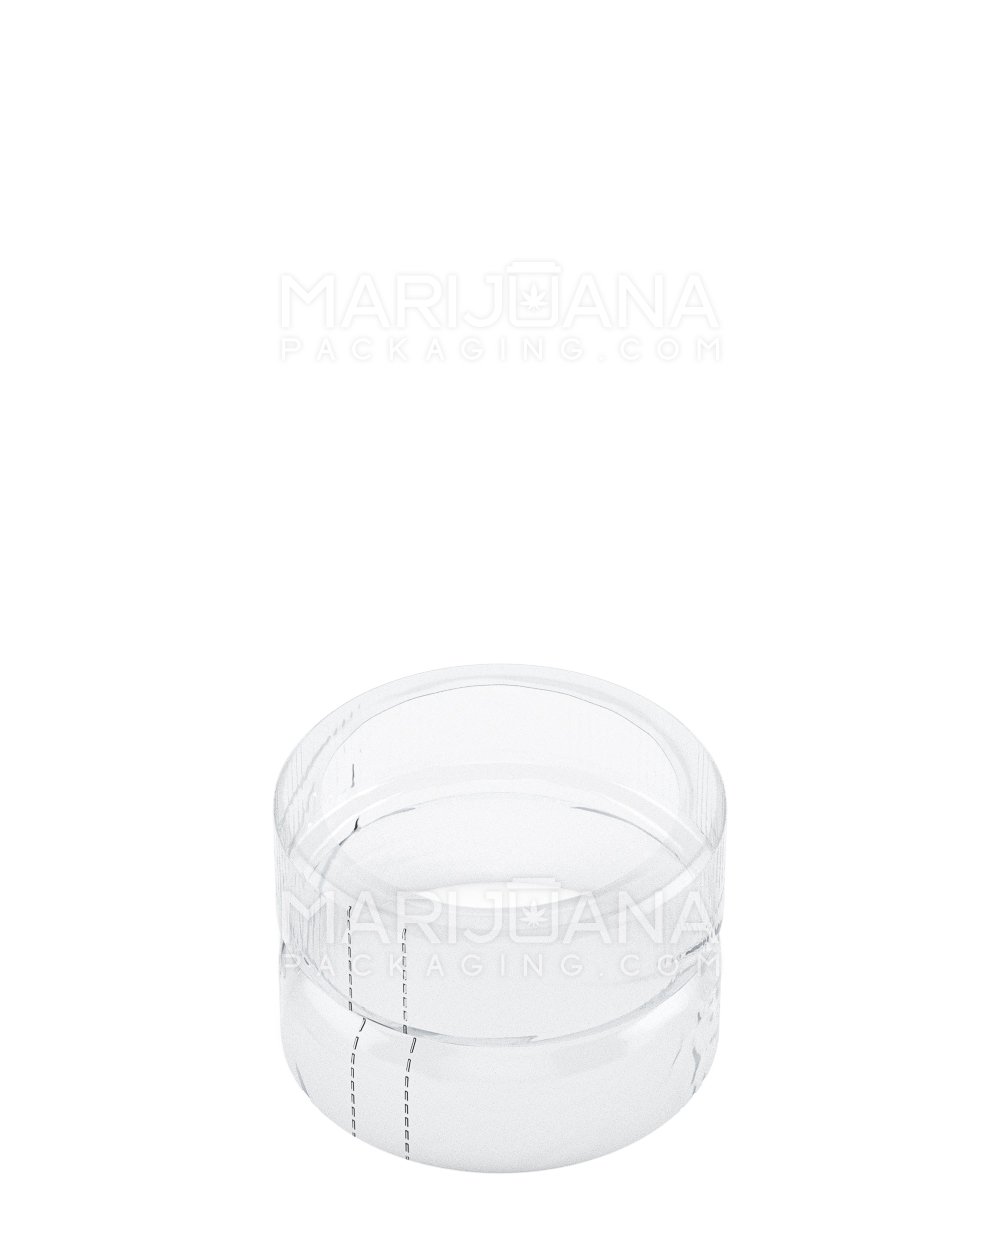 Tamper Evident Glass Jar Shrink Bands | 1oz - Clear Plastic | Sample - 1